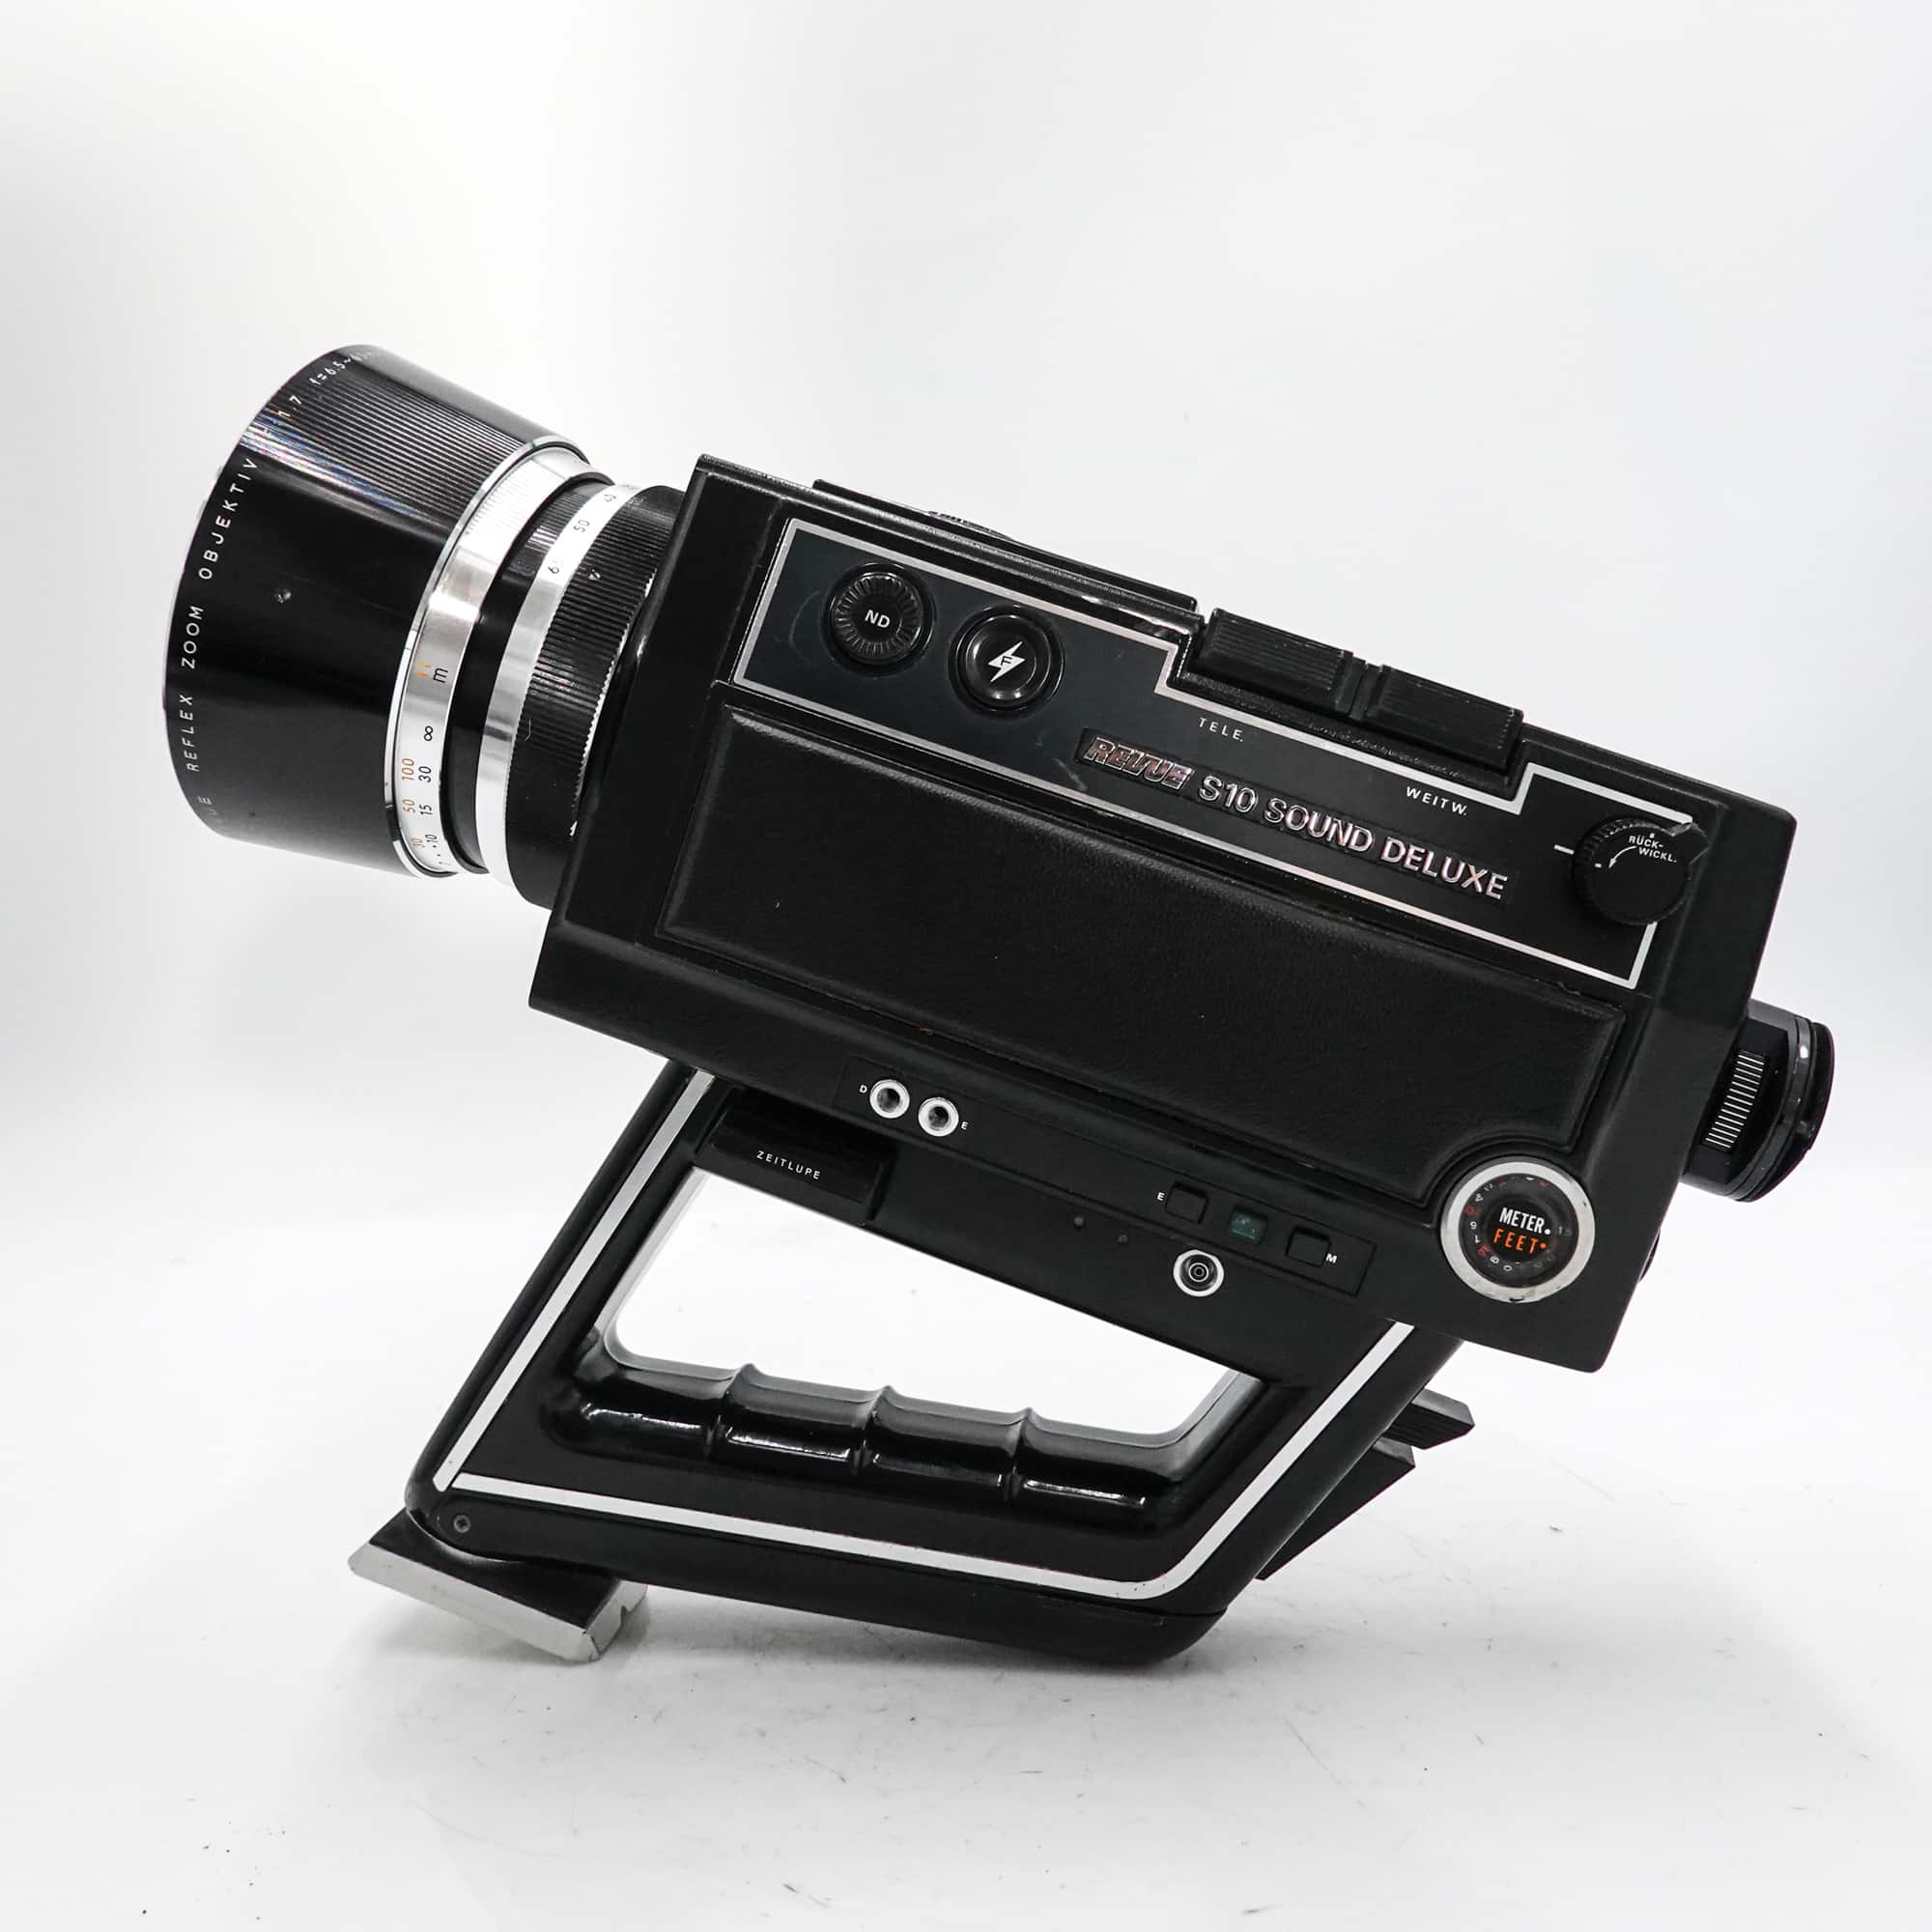 Revue S10 Deluxe Super 8 Camera